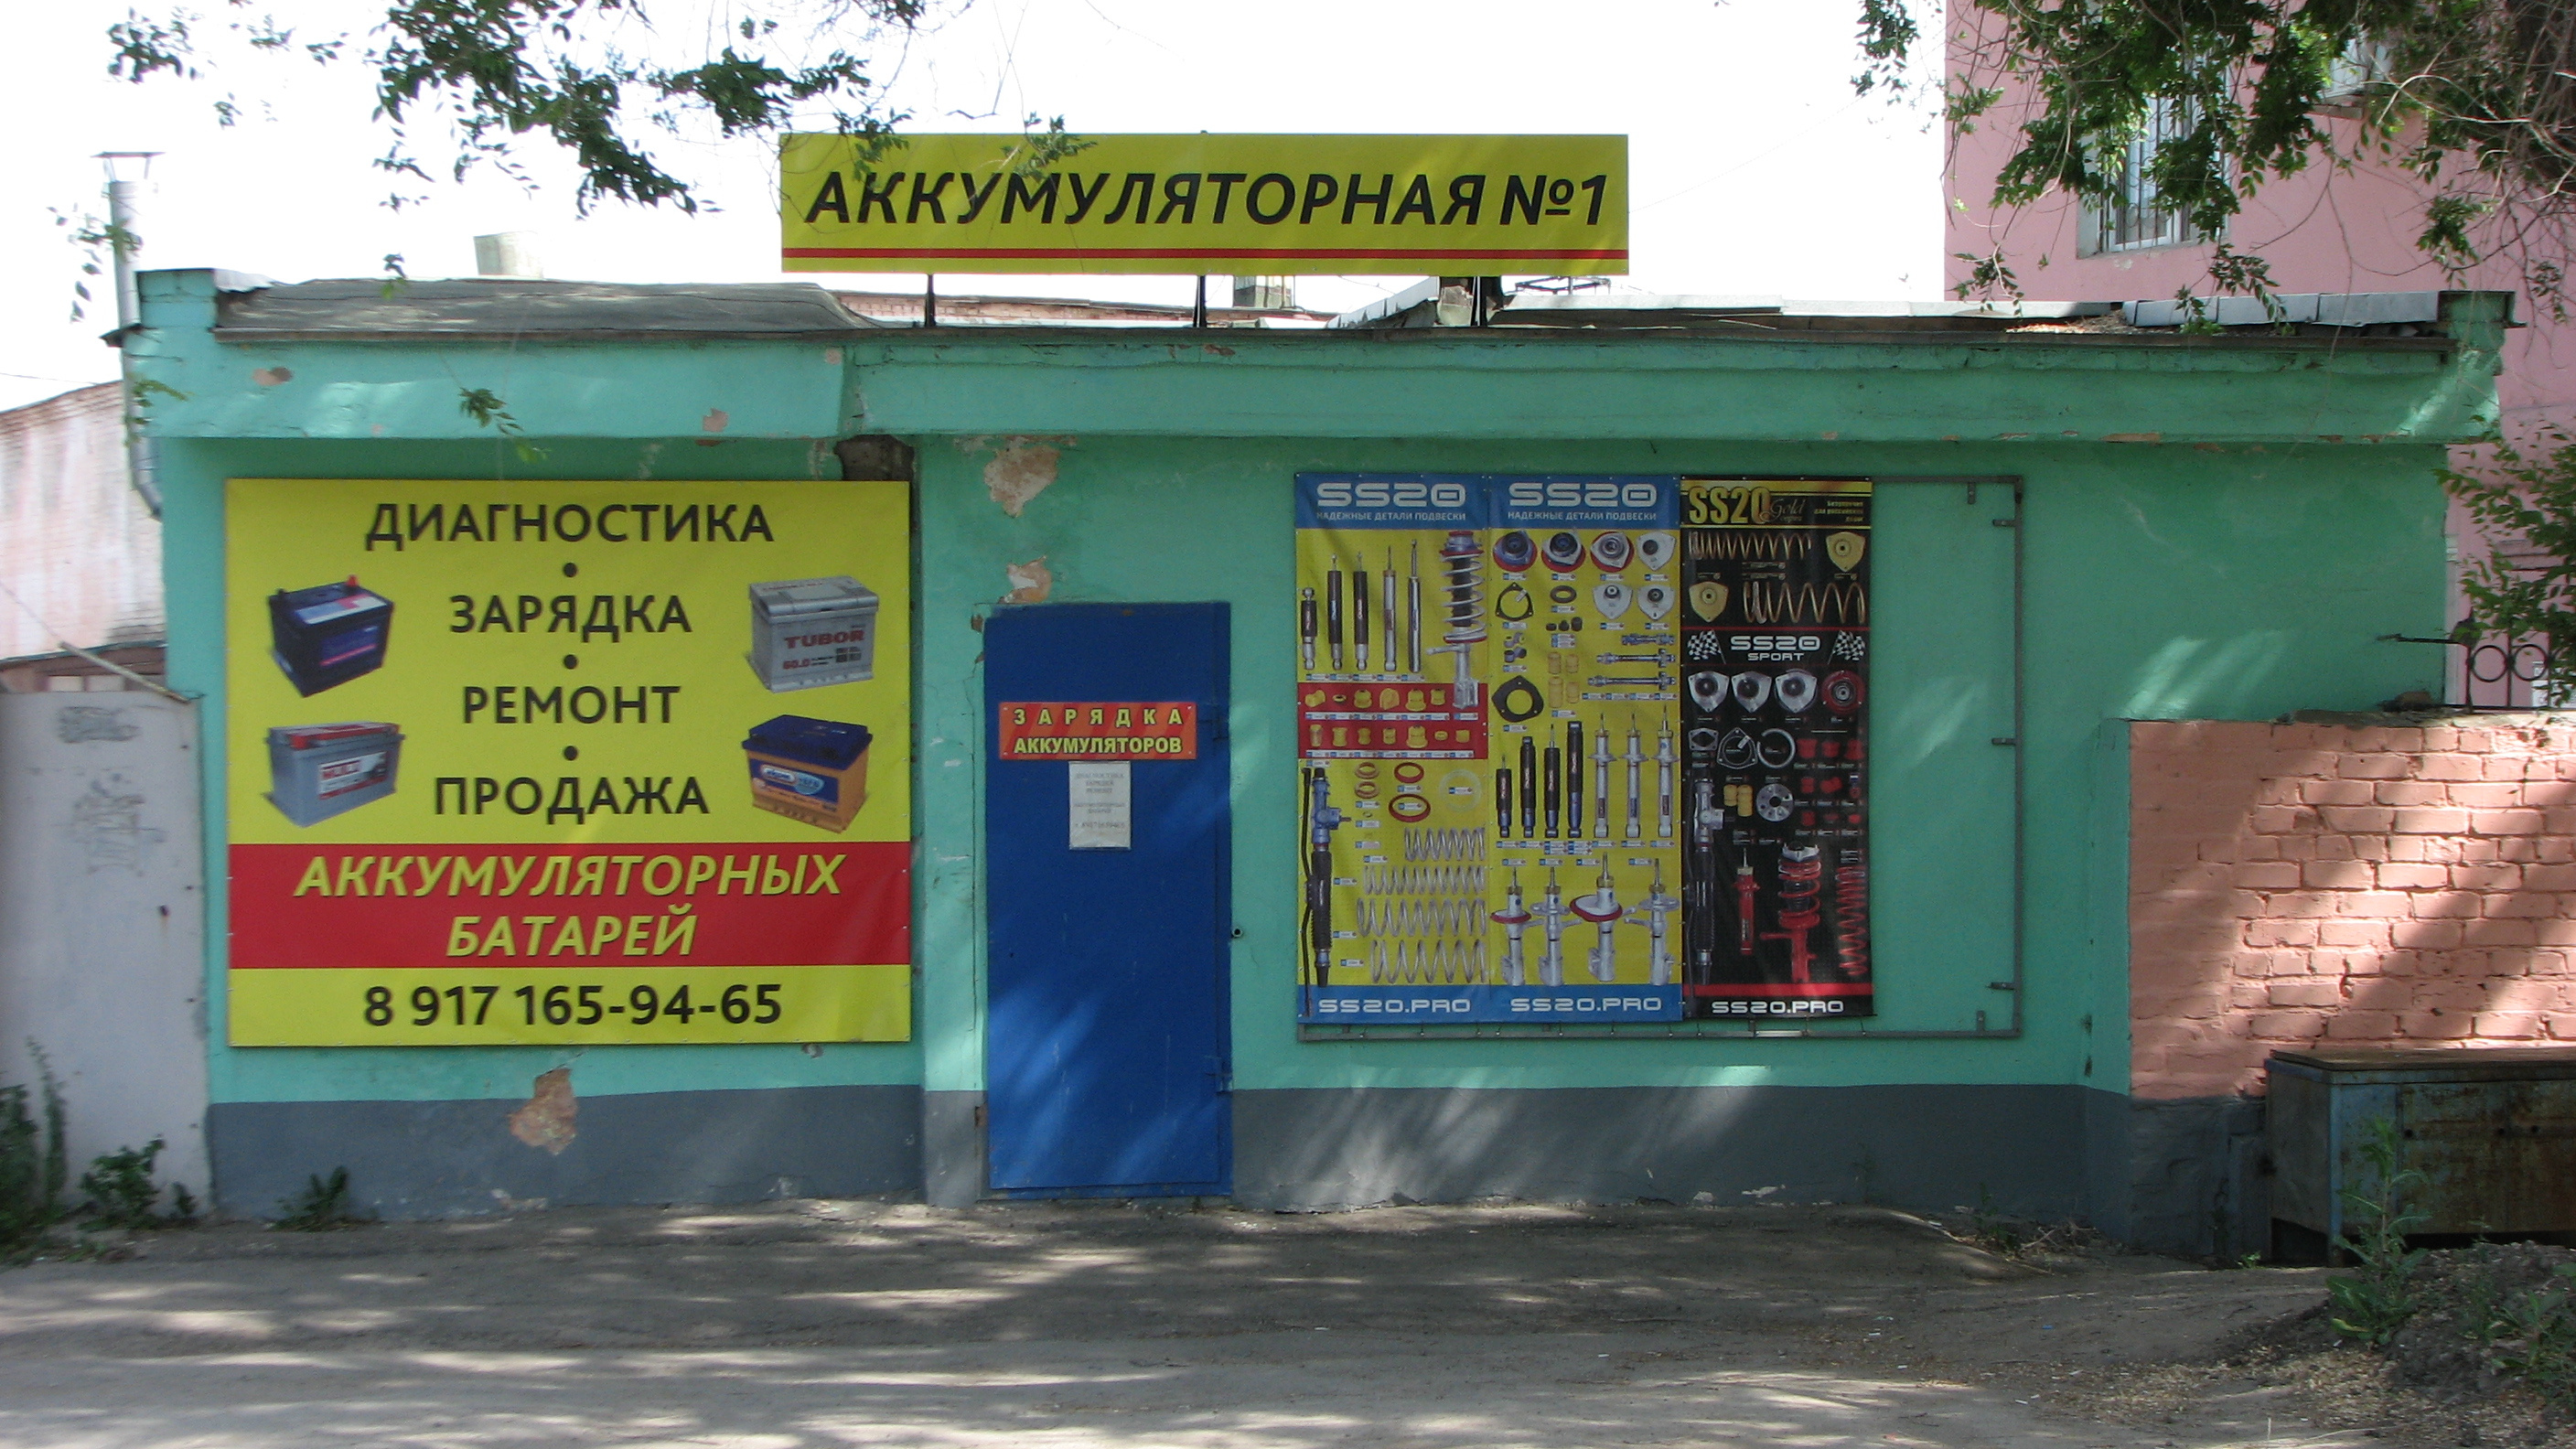 «Аккумуляторная <nobr class="_">№ 1</nobr>» находится на Товарной, 1д в Кировском районе Самары